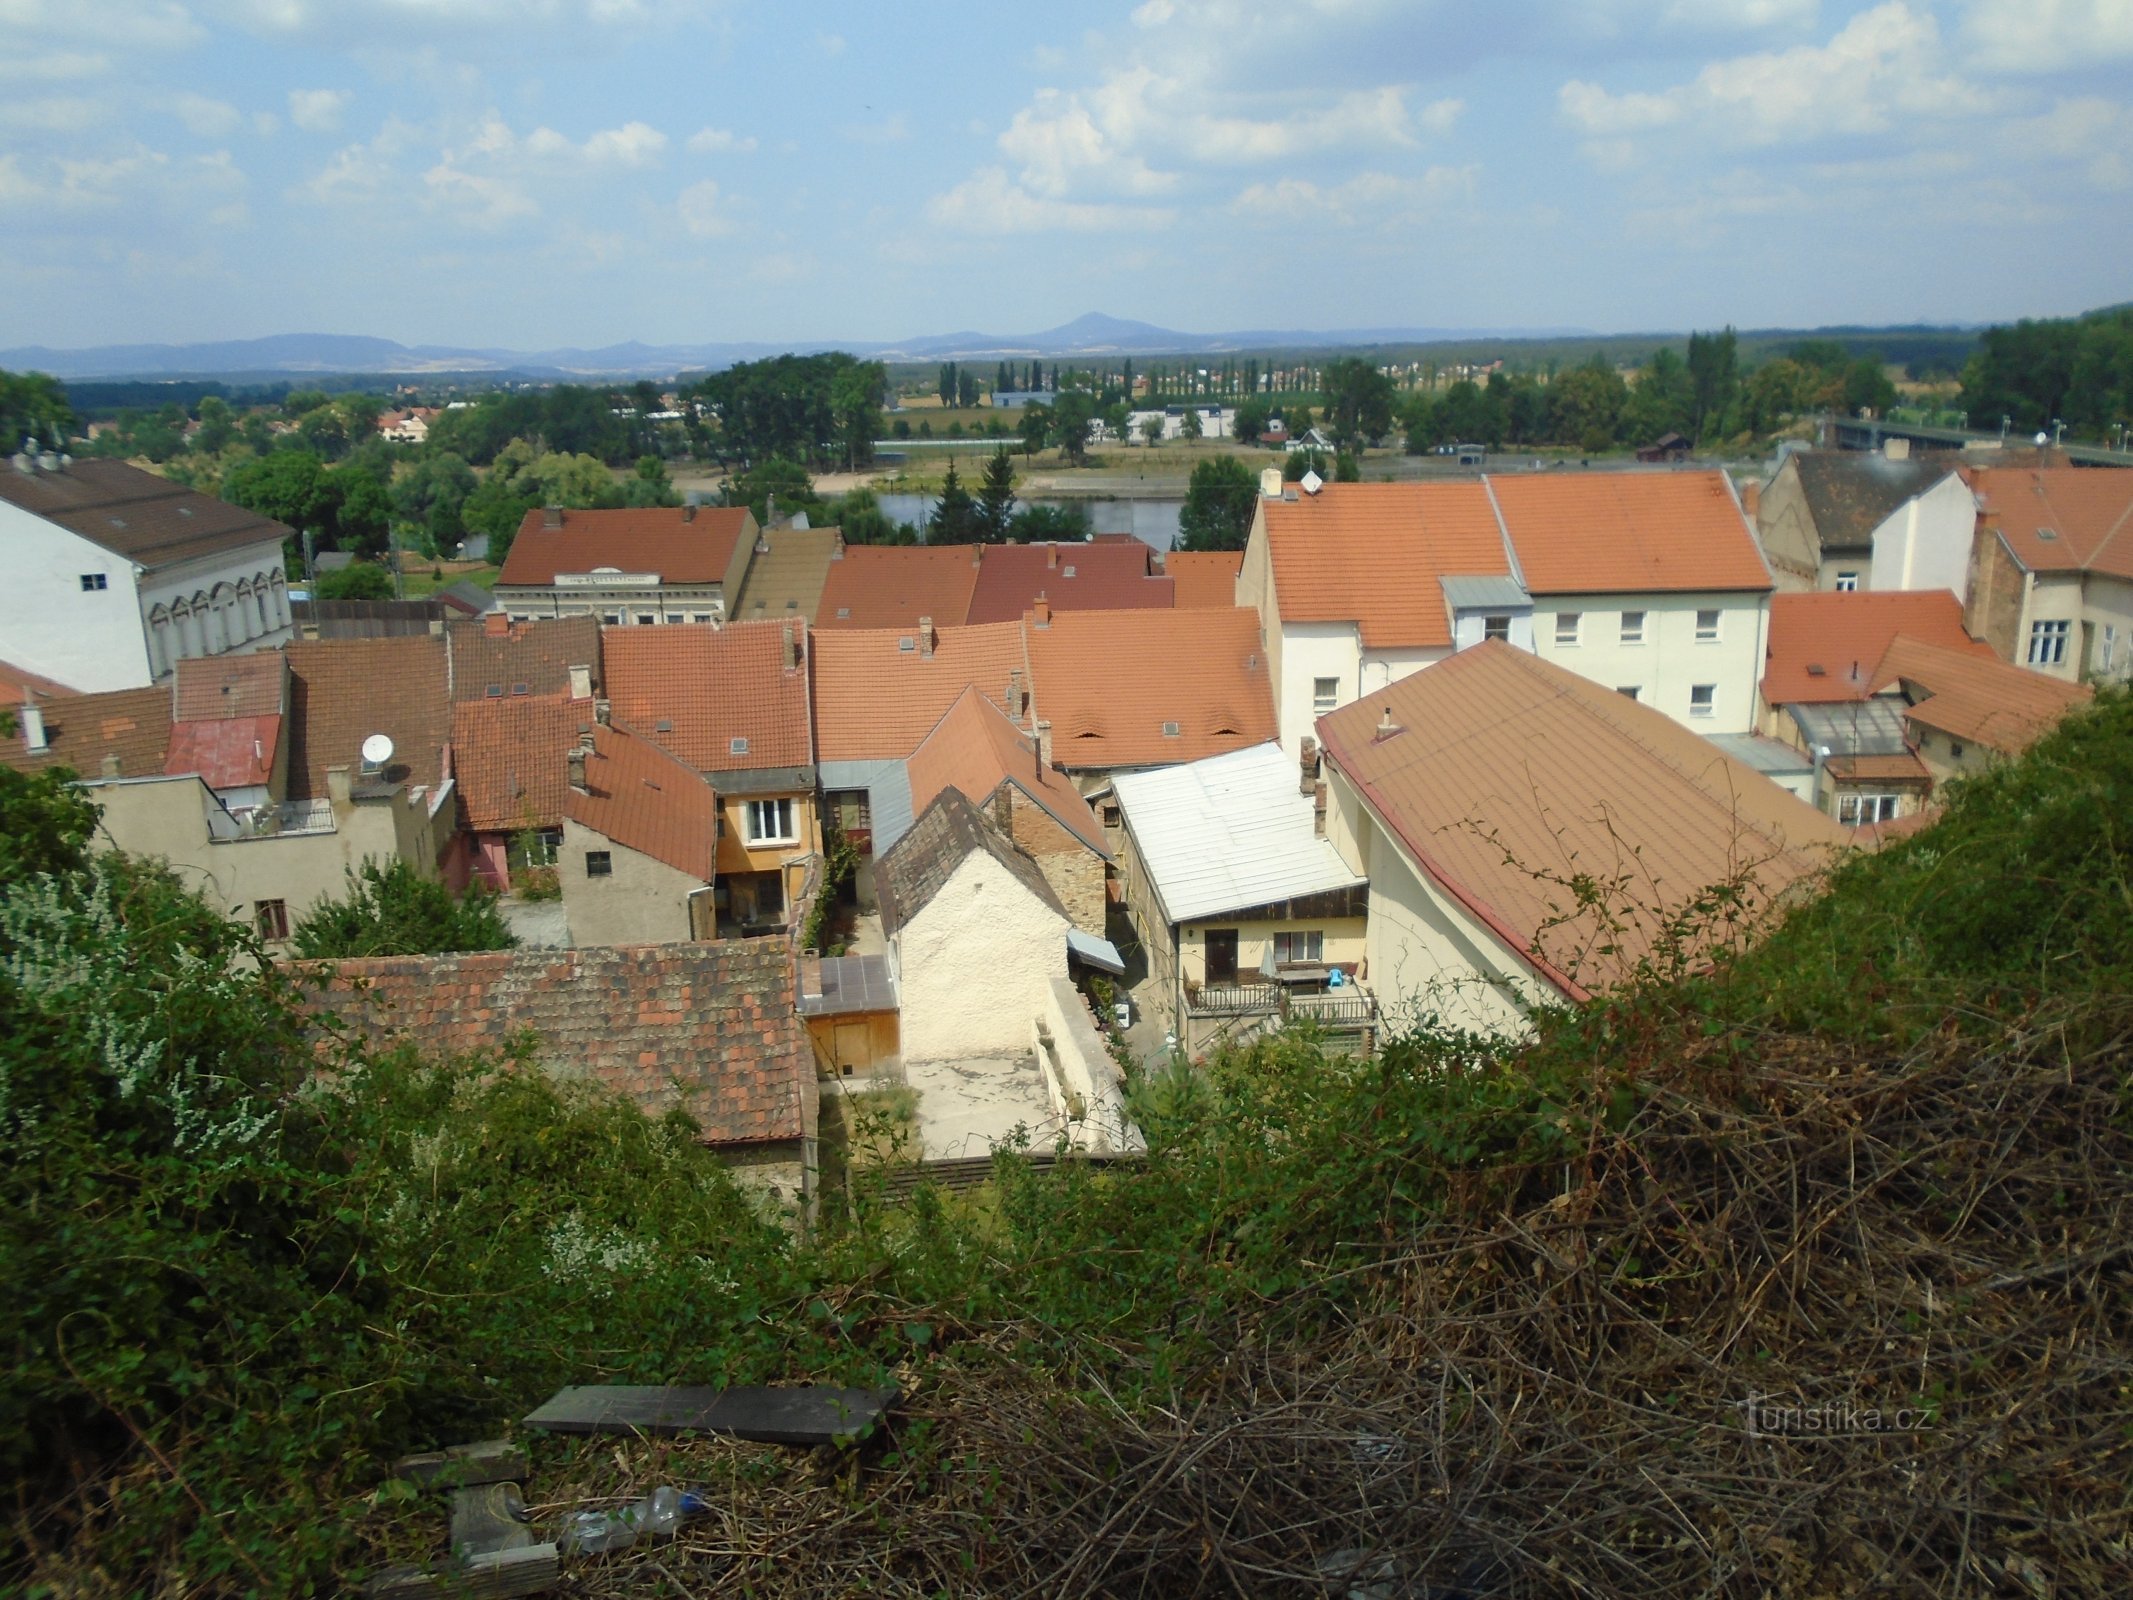 Utsikt från Hláska (Roudnice nad Labem)